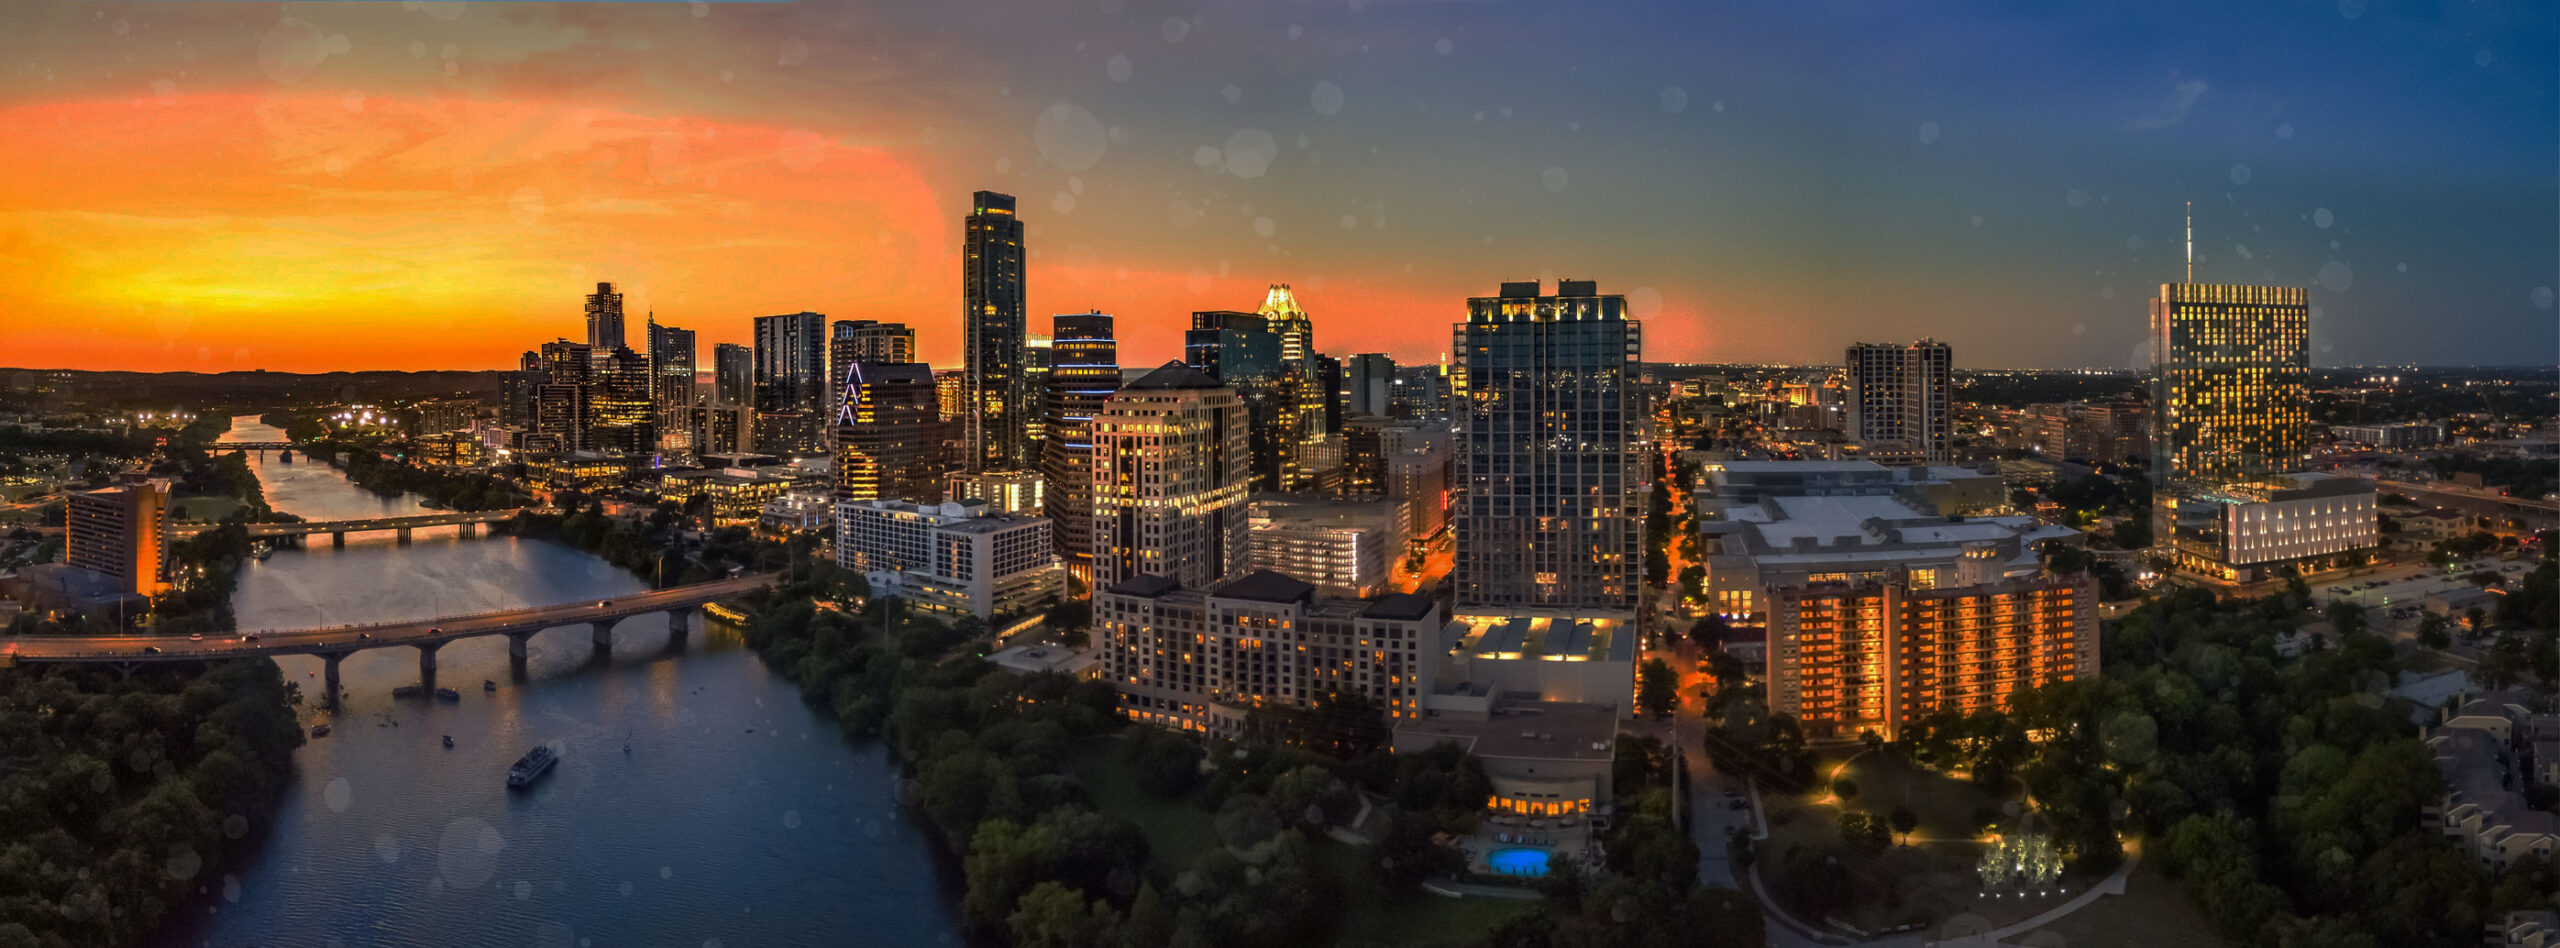 Austin Texas city skyline and river at dusk